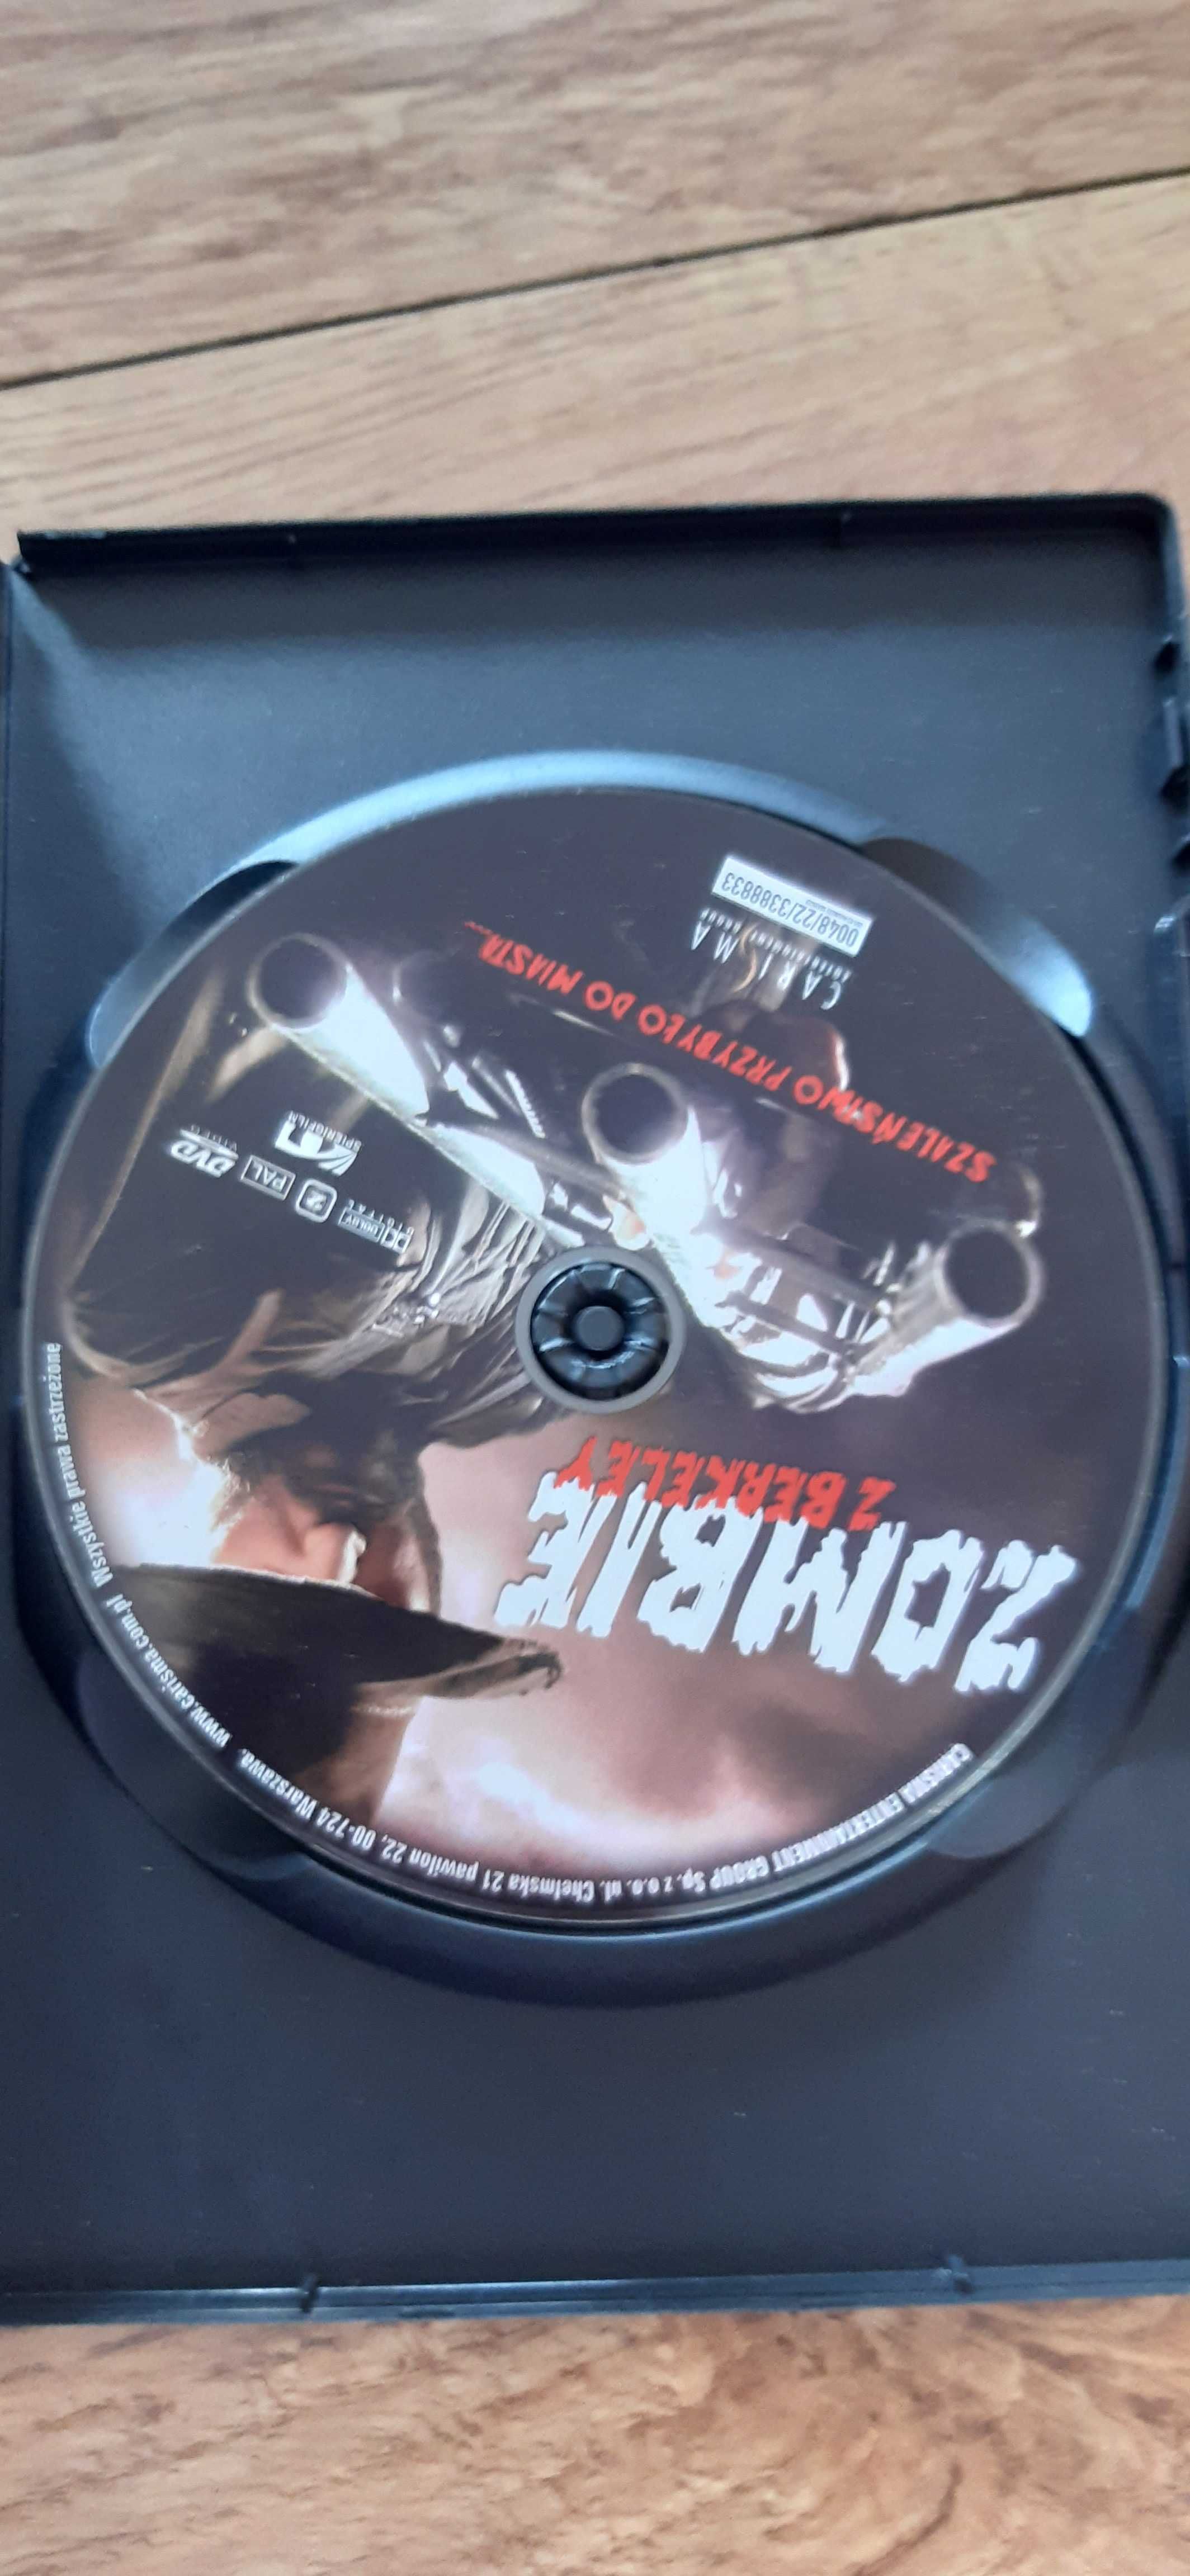 dvd klasyka kina b, horror zombie z bekeley